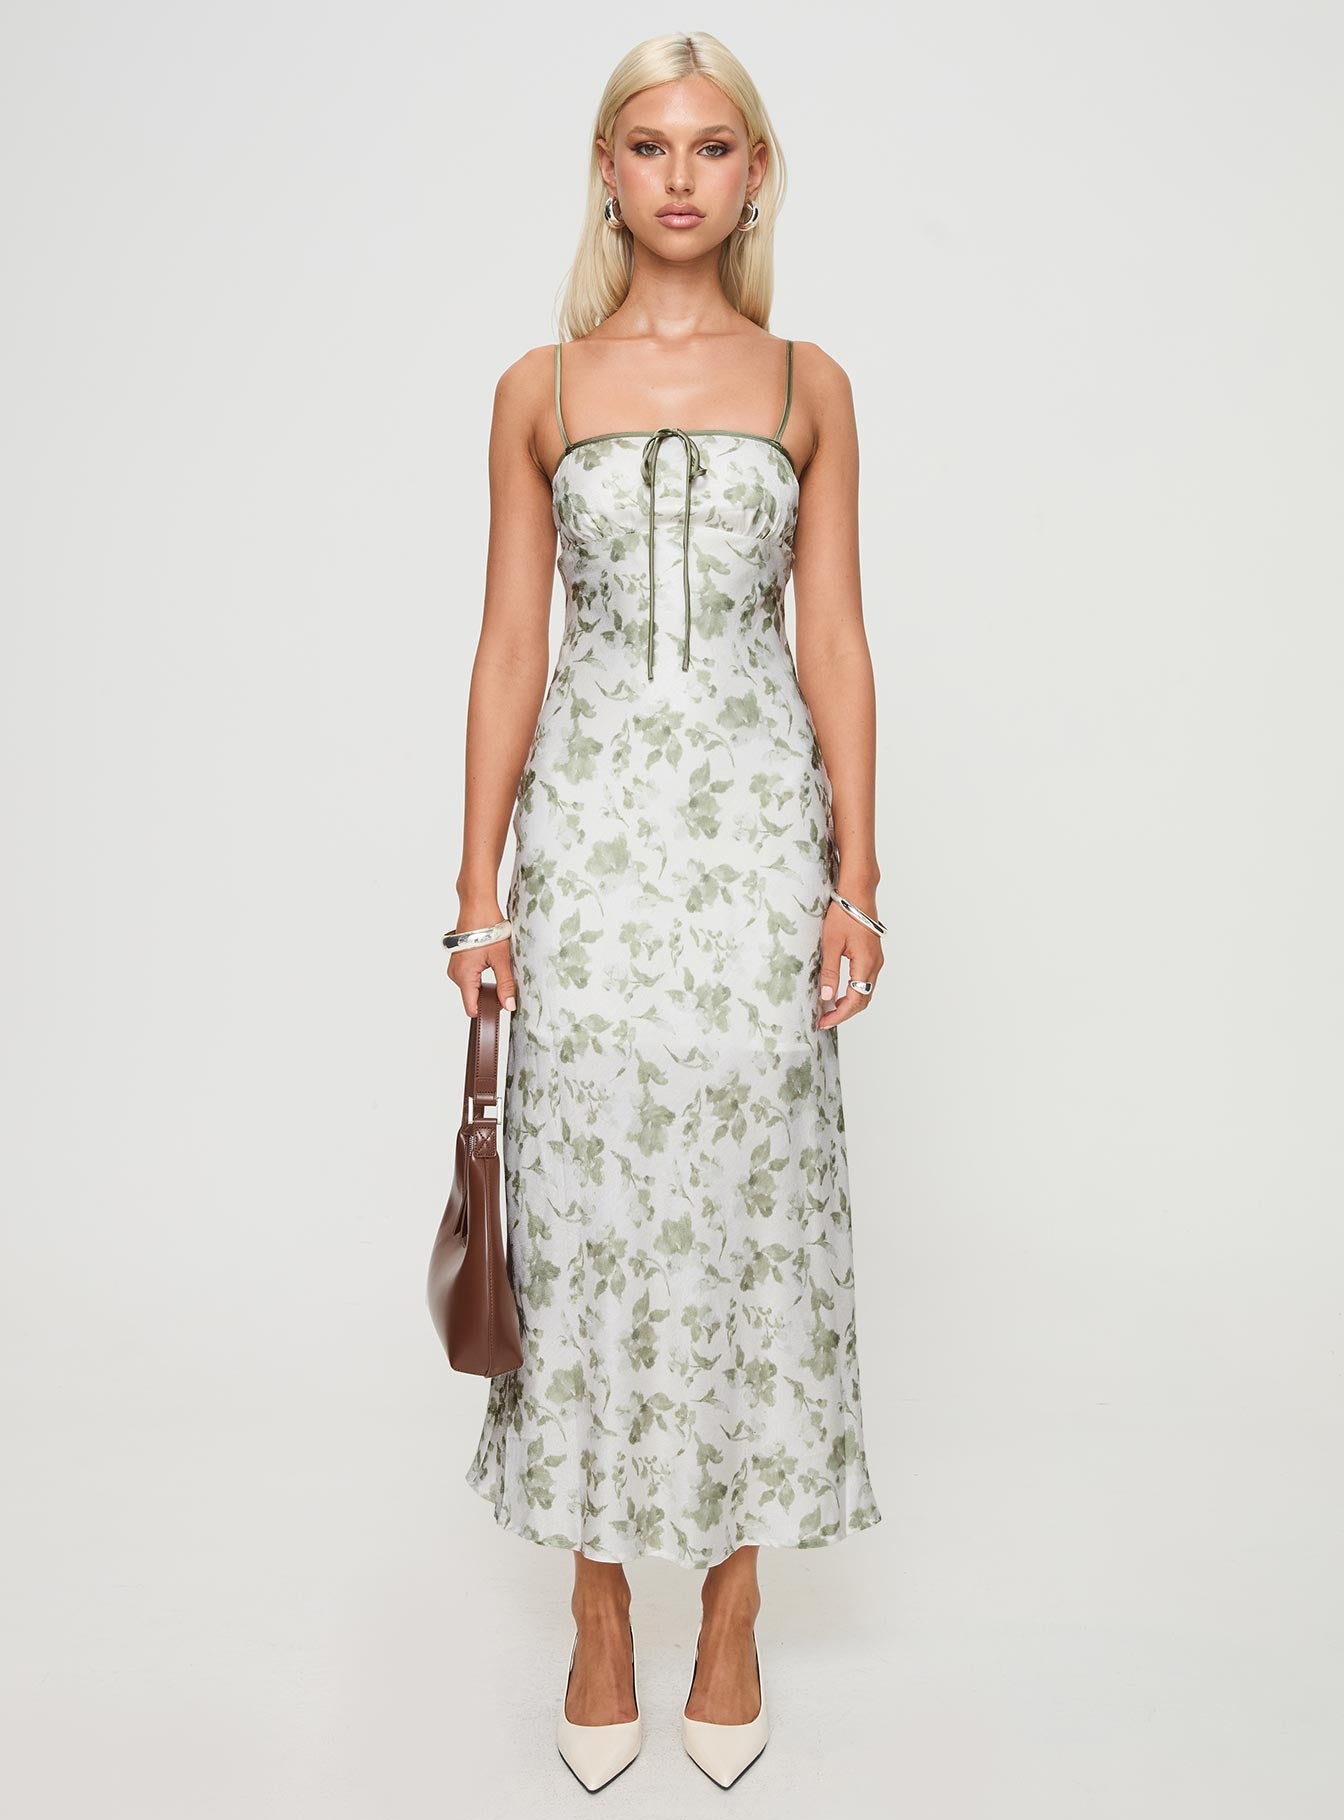 Shop Formal Dress - Vasiliki Maxi Dress White / Green Floral third image